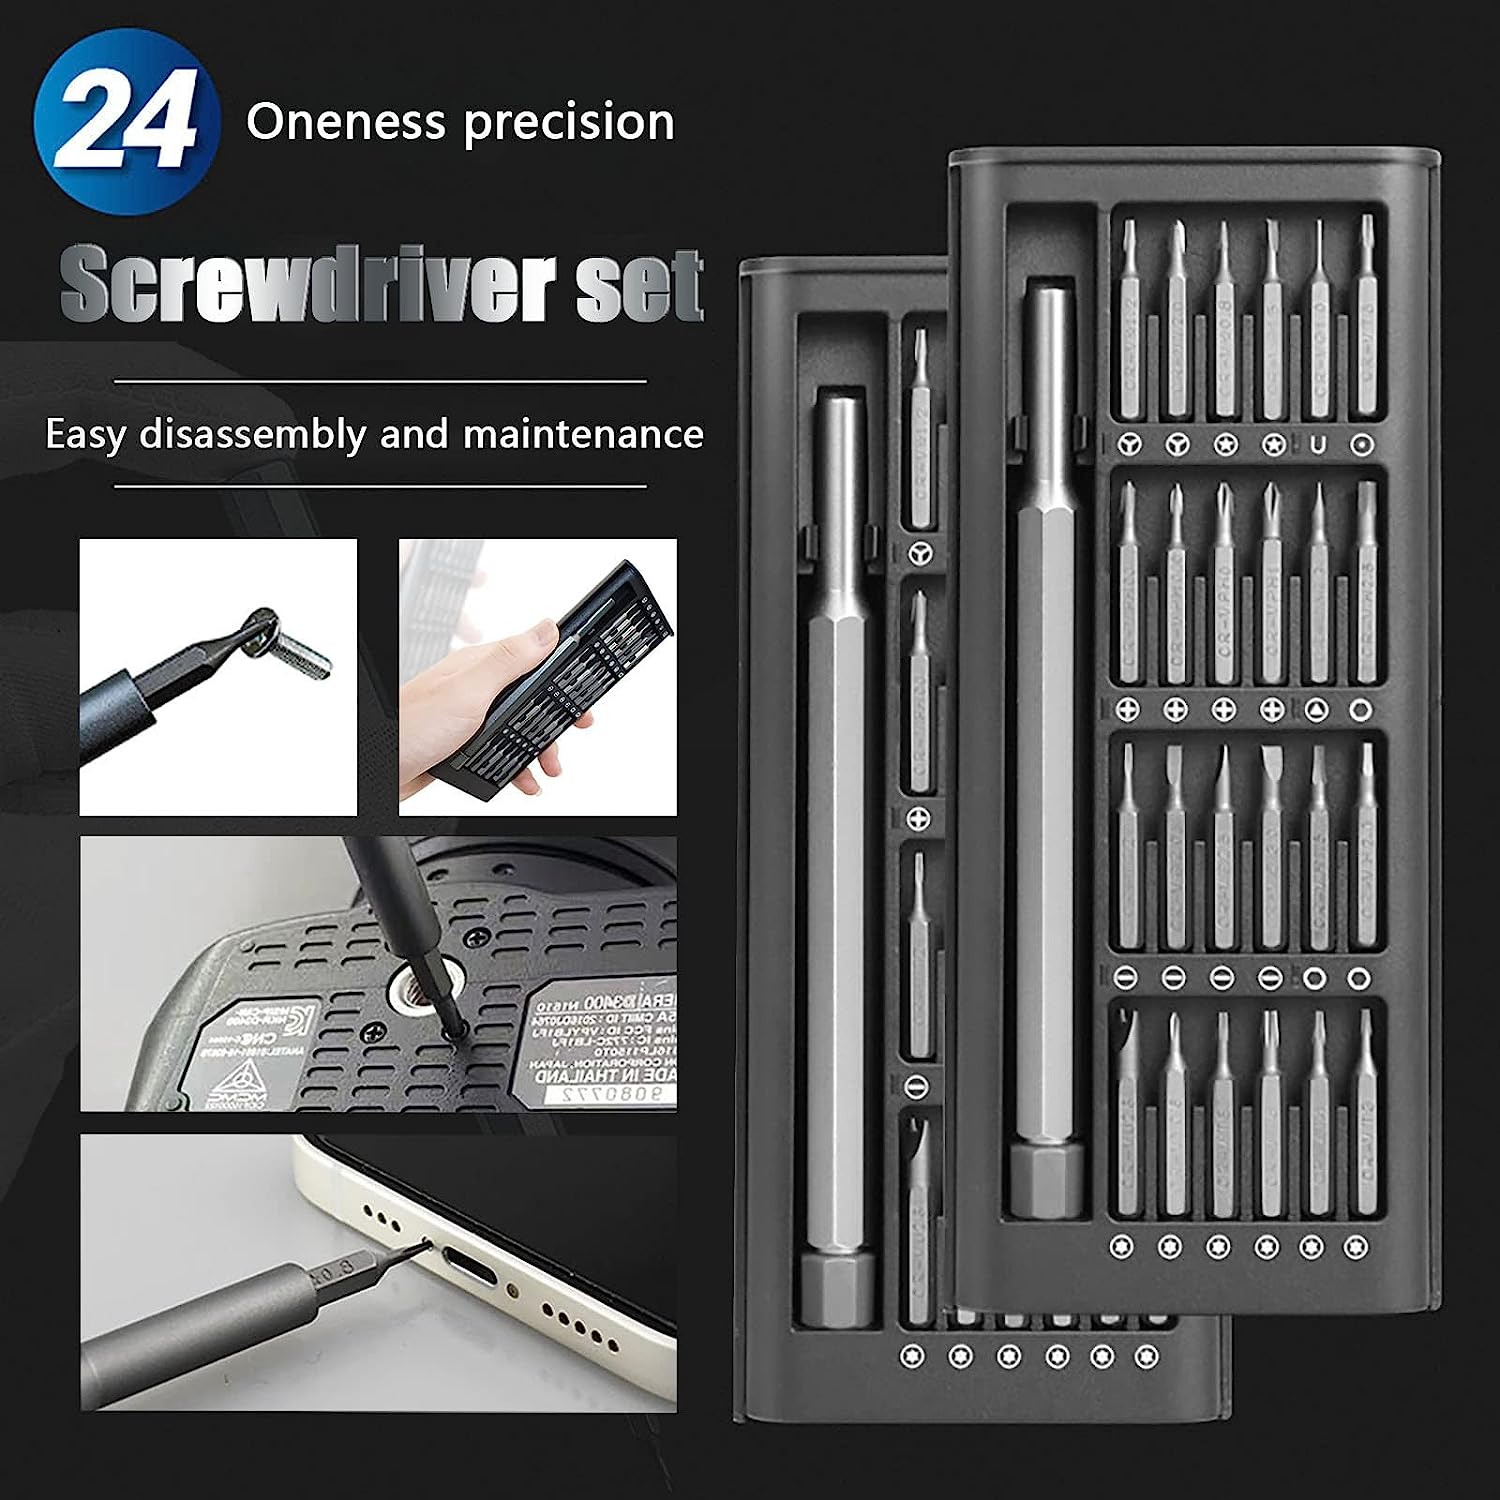 24-in-1 screwdriver set